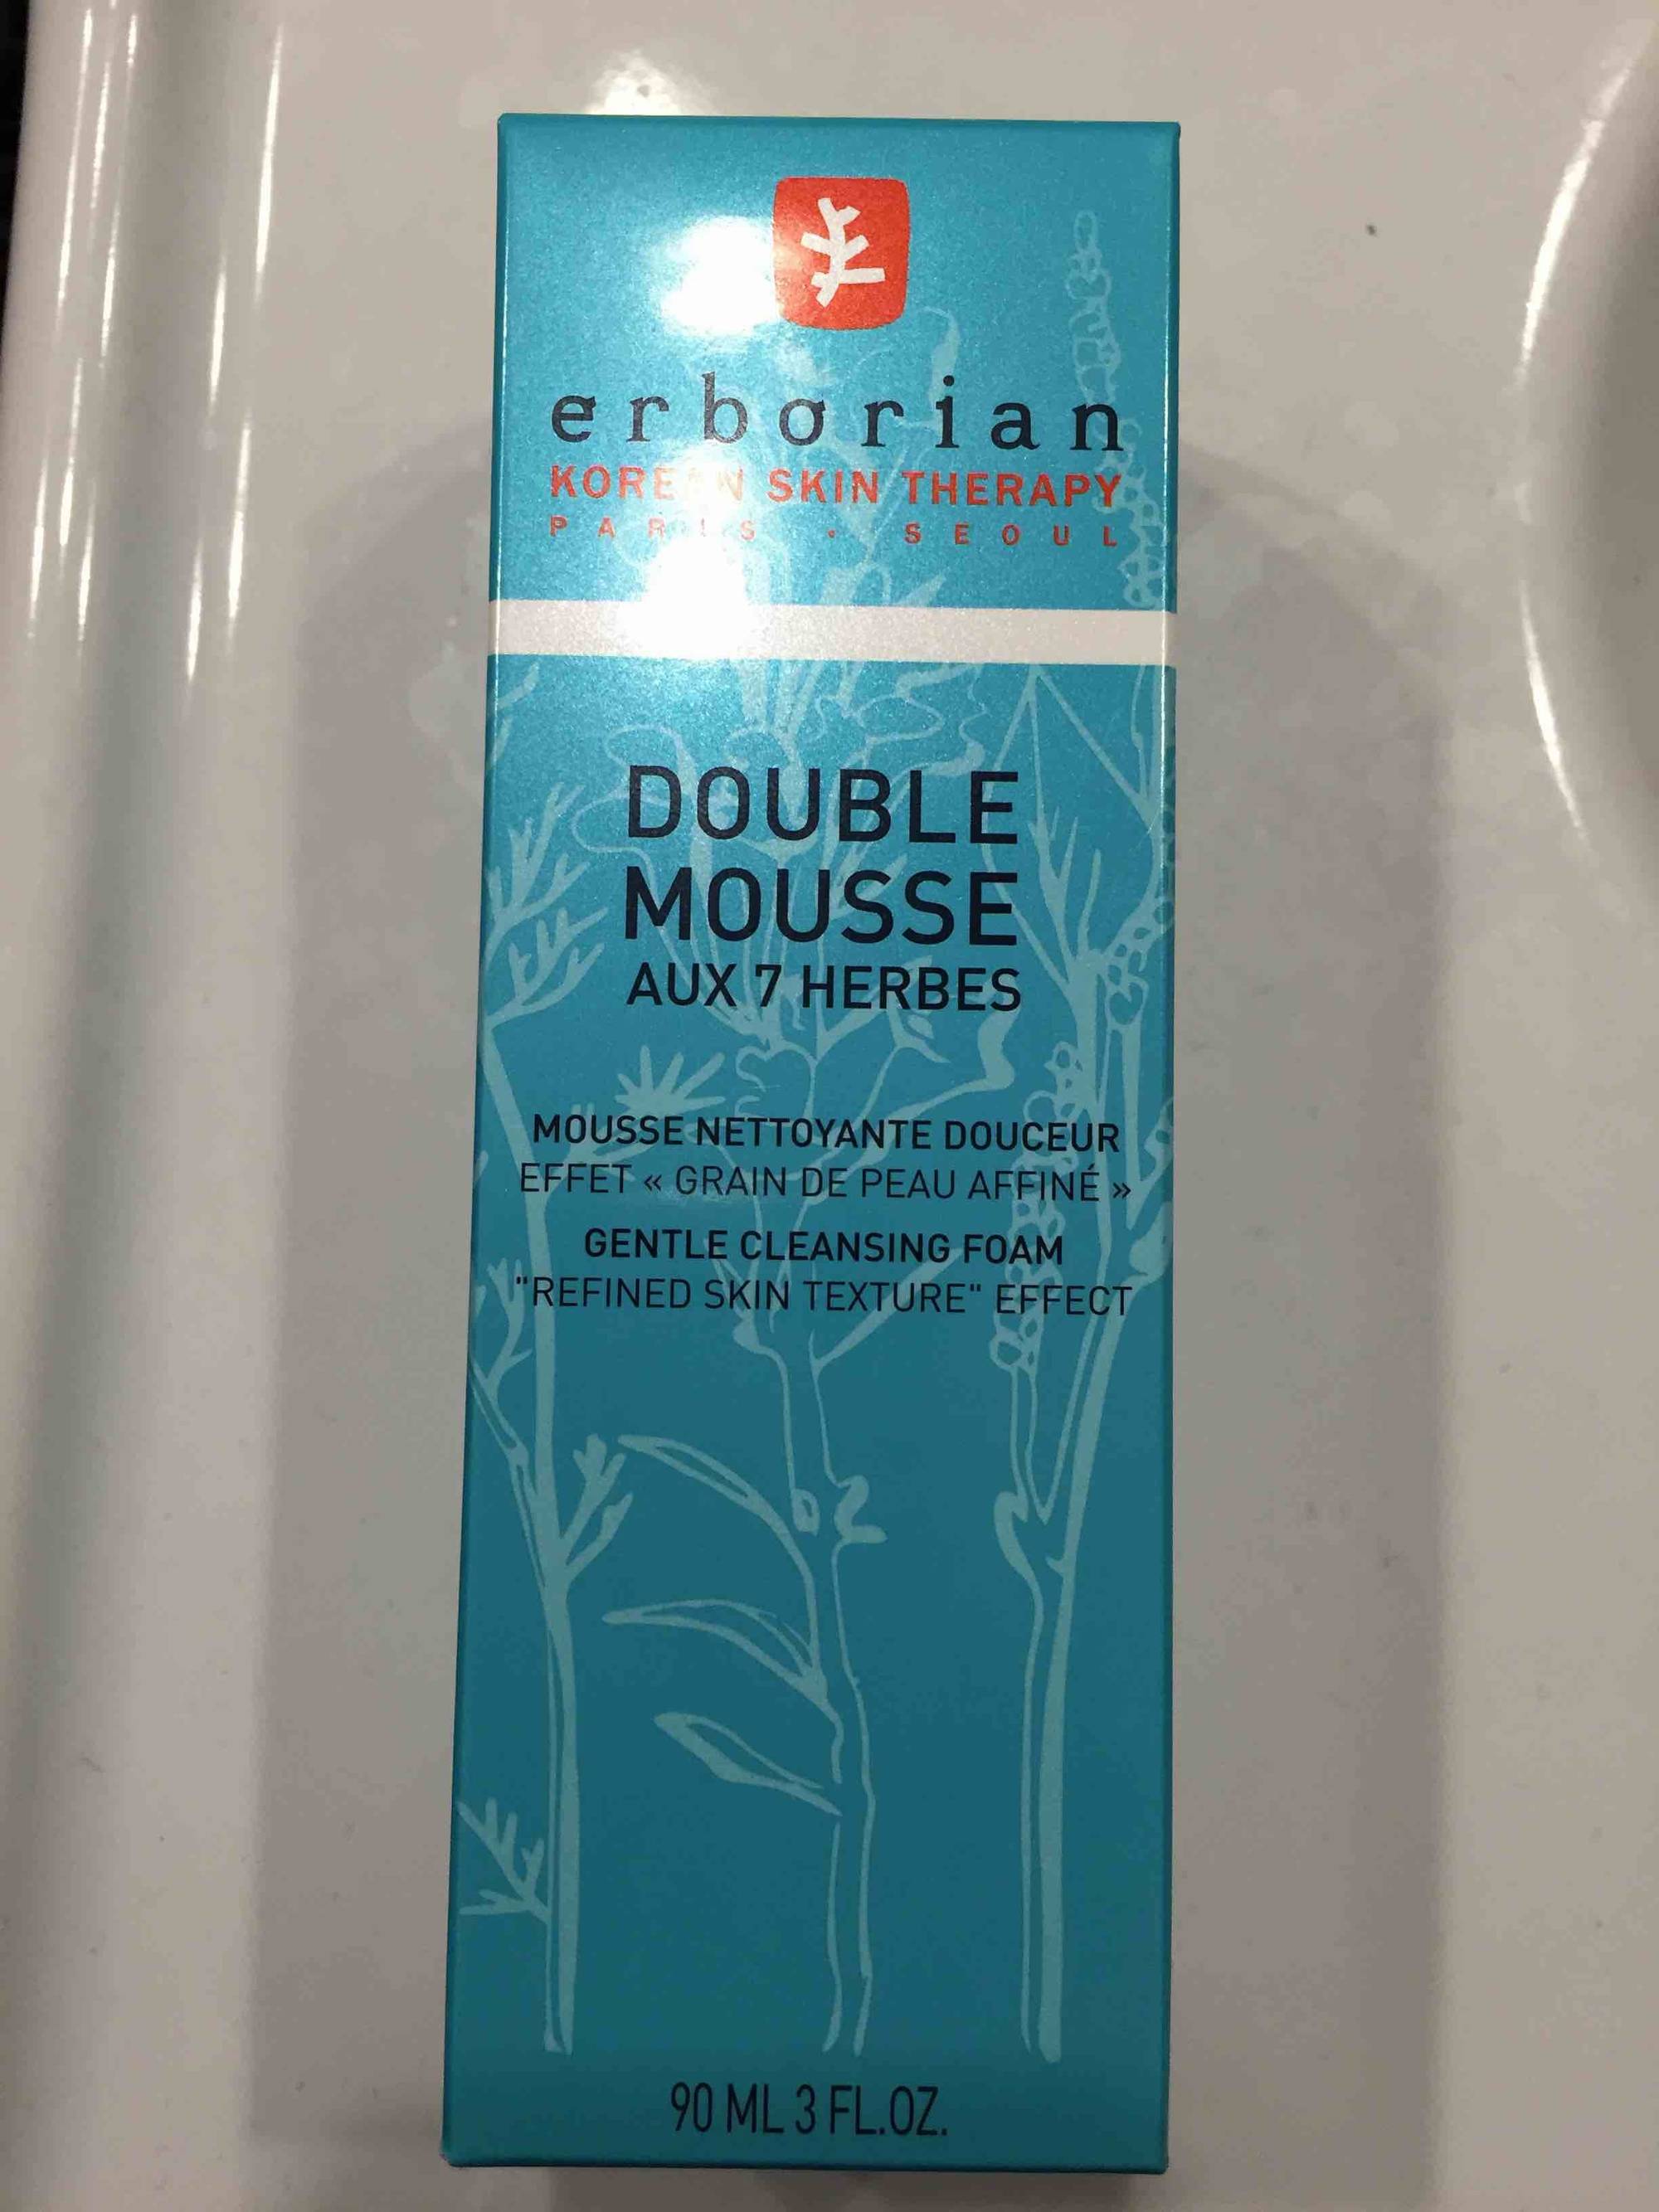 ERBORIAN - Korein skin therapy - Double mousse